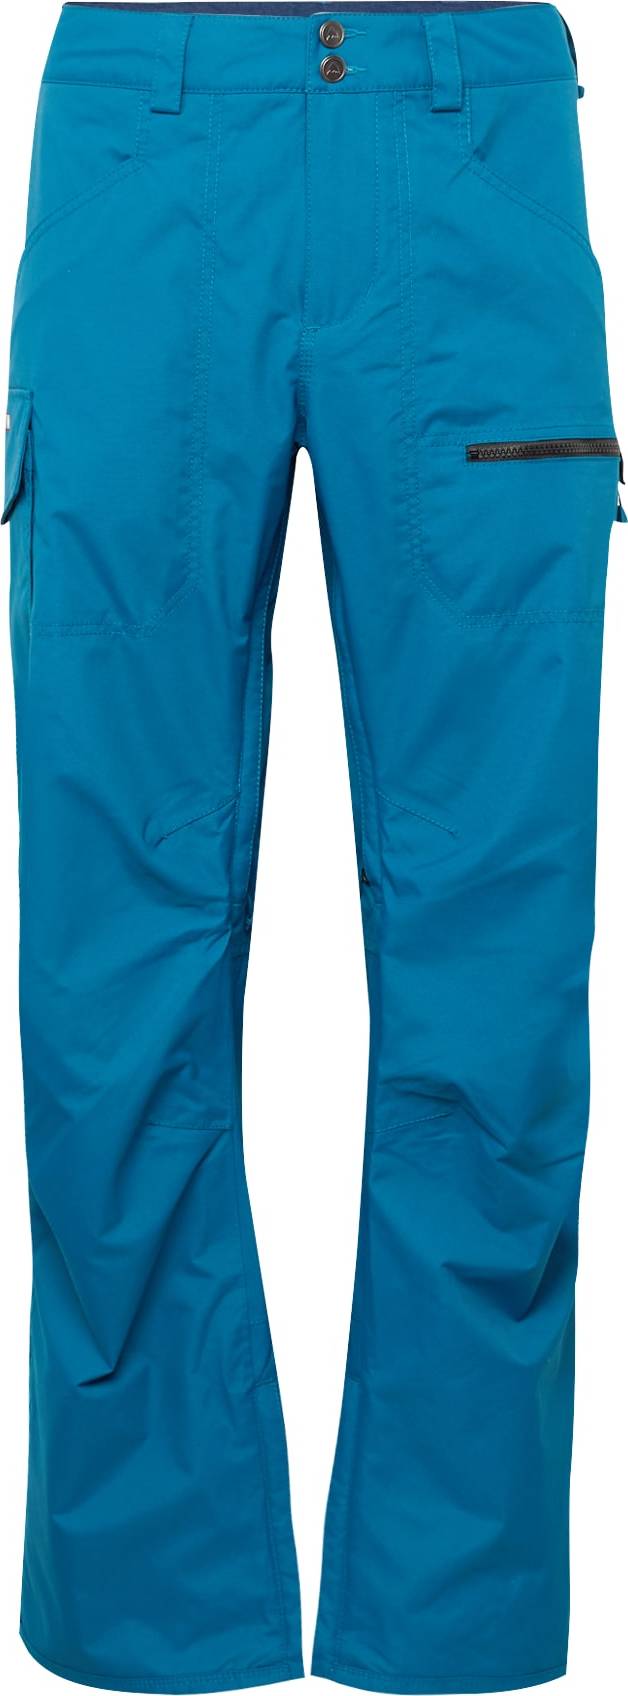 BURTON Outdoorové kalhoty 'COVERT' azurová modrá / černá